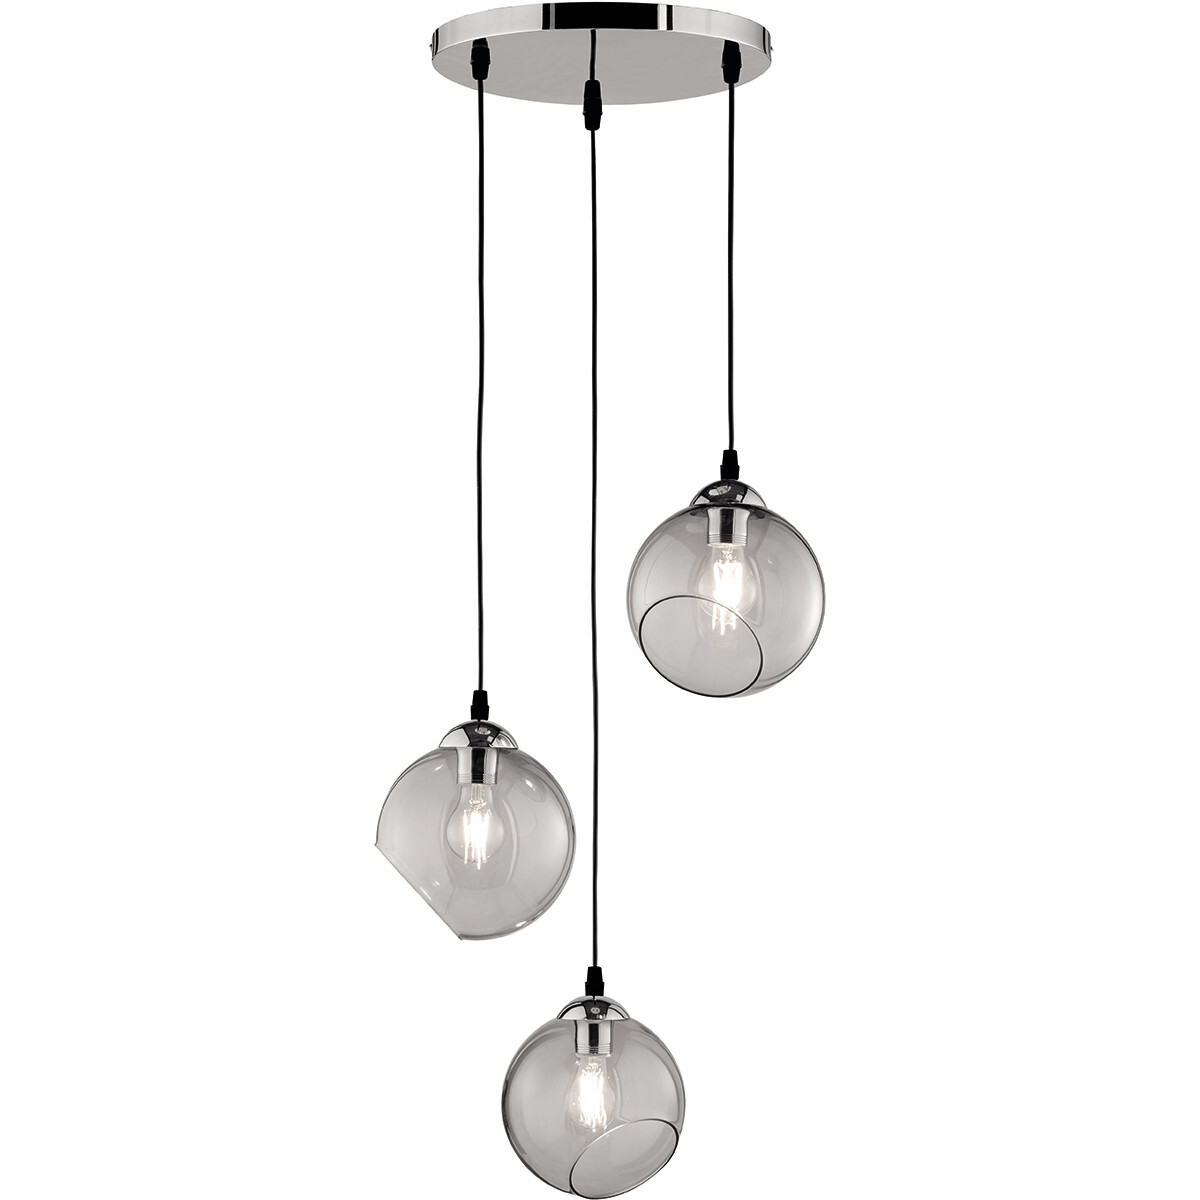 BES LED LED Hanglamp - Trion Klino - E27 Fitting - 3-lichts - Rond - Mat Chroom Rookkleur - Aluminium